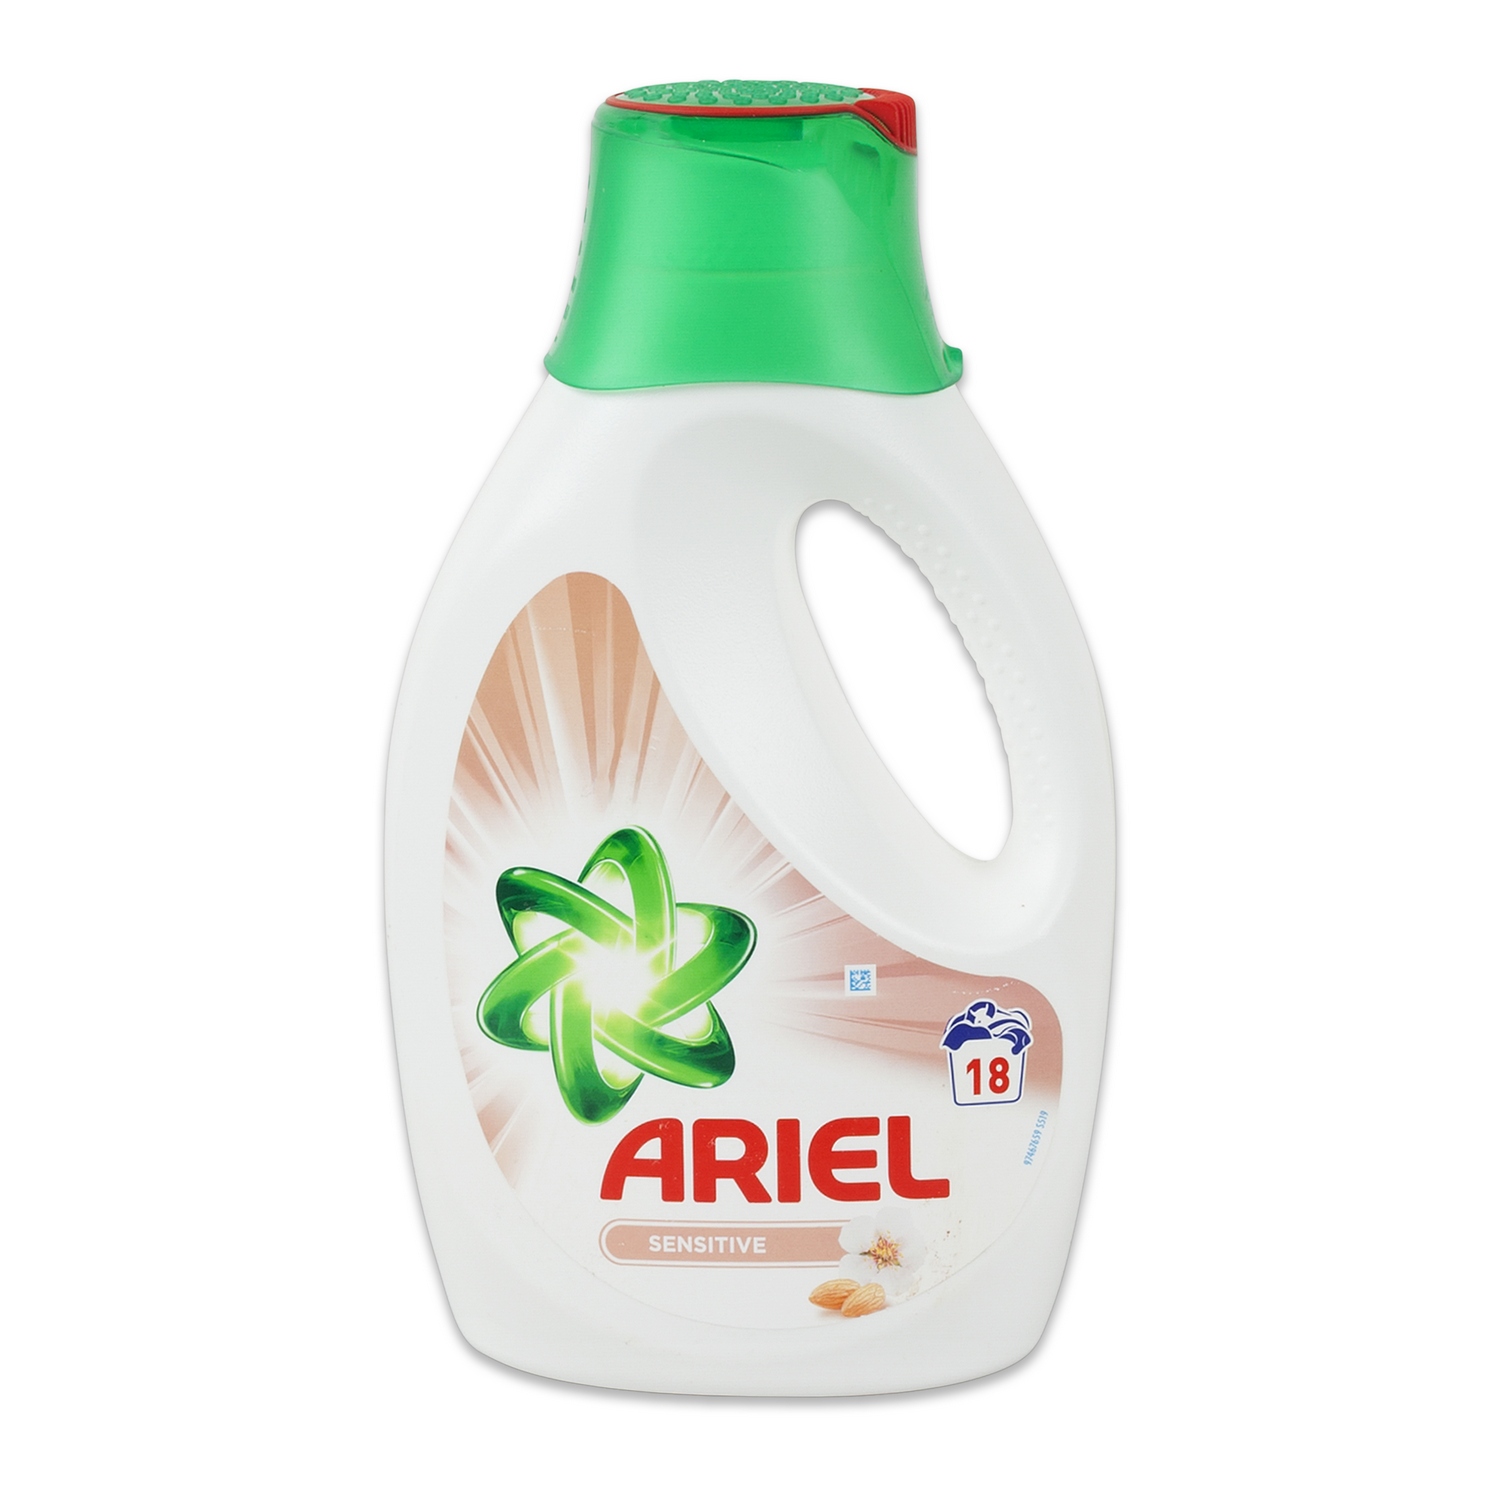 Normalisatie shampoo detectie Ariel wasmiddel vloeibaar kleur bij Nubox snelle levering in Suriname